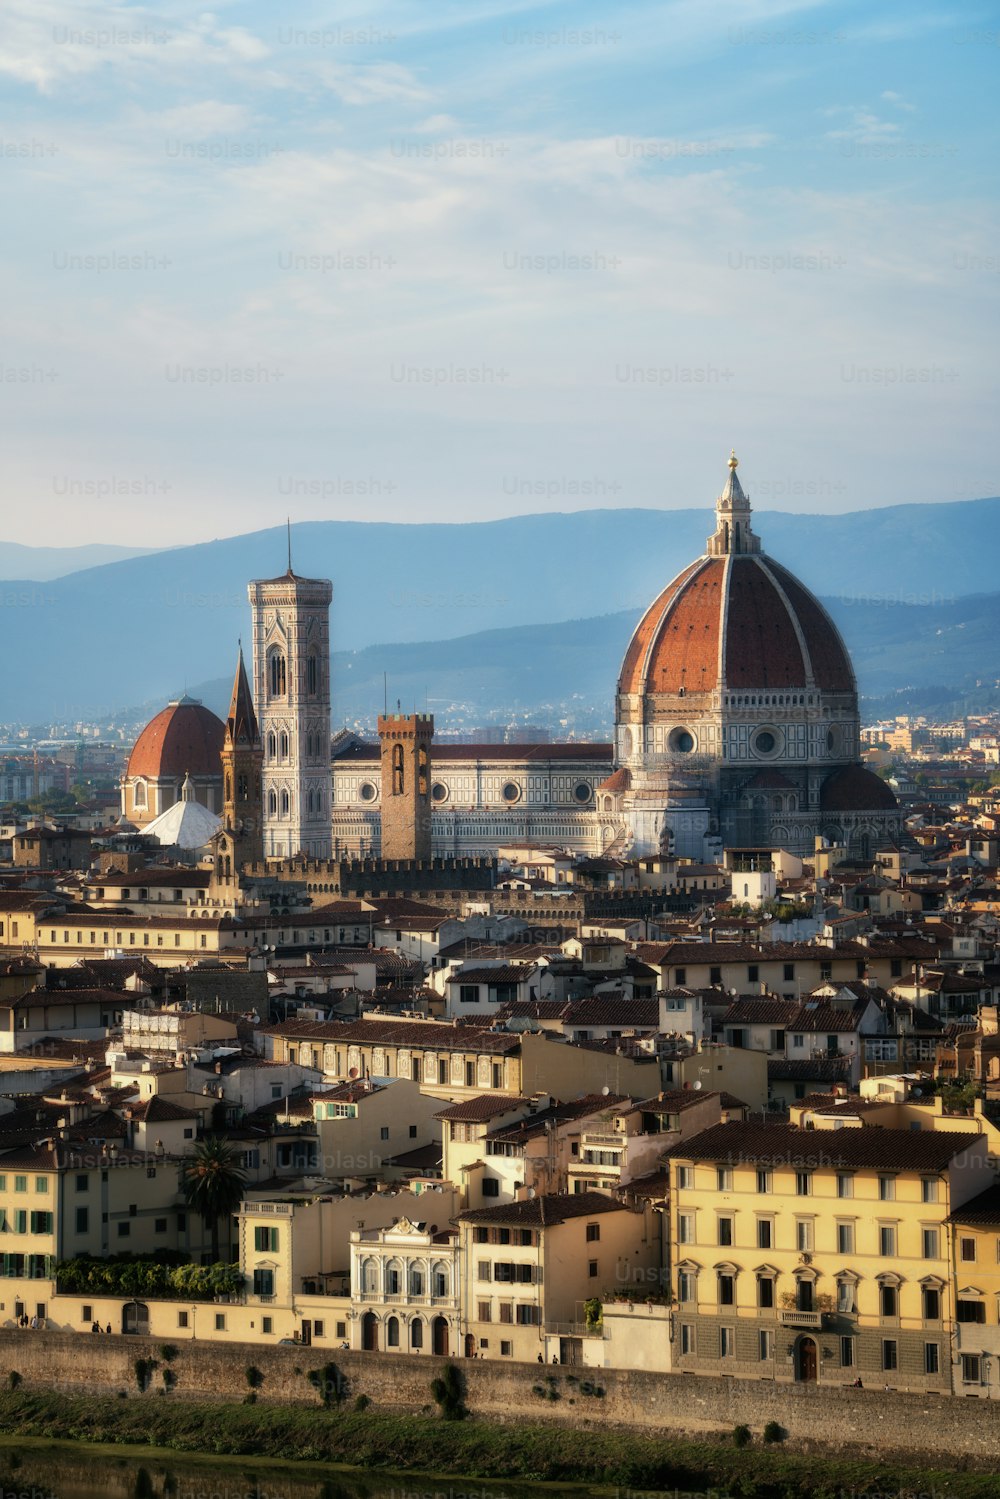 Cathédrale de Florence (Cattedrale di Santa Maria del Fiore) dans le centre historique de Florence, Italie avec vue panoramique sur la ville. La cathédrale de Florence est la principale attraction touristique de la Toscane, en Italie.